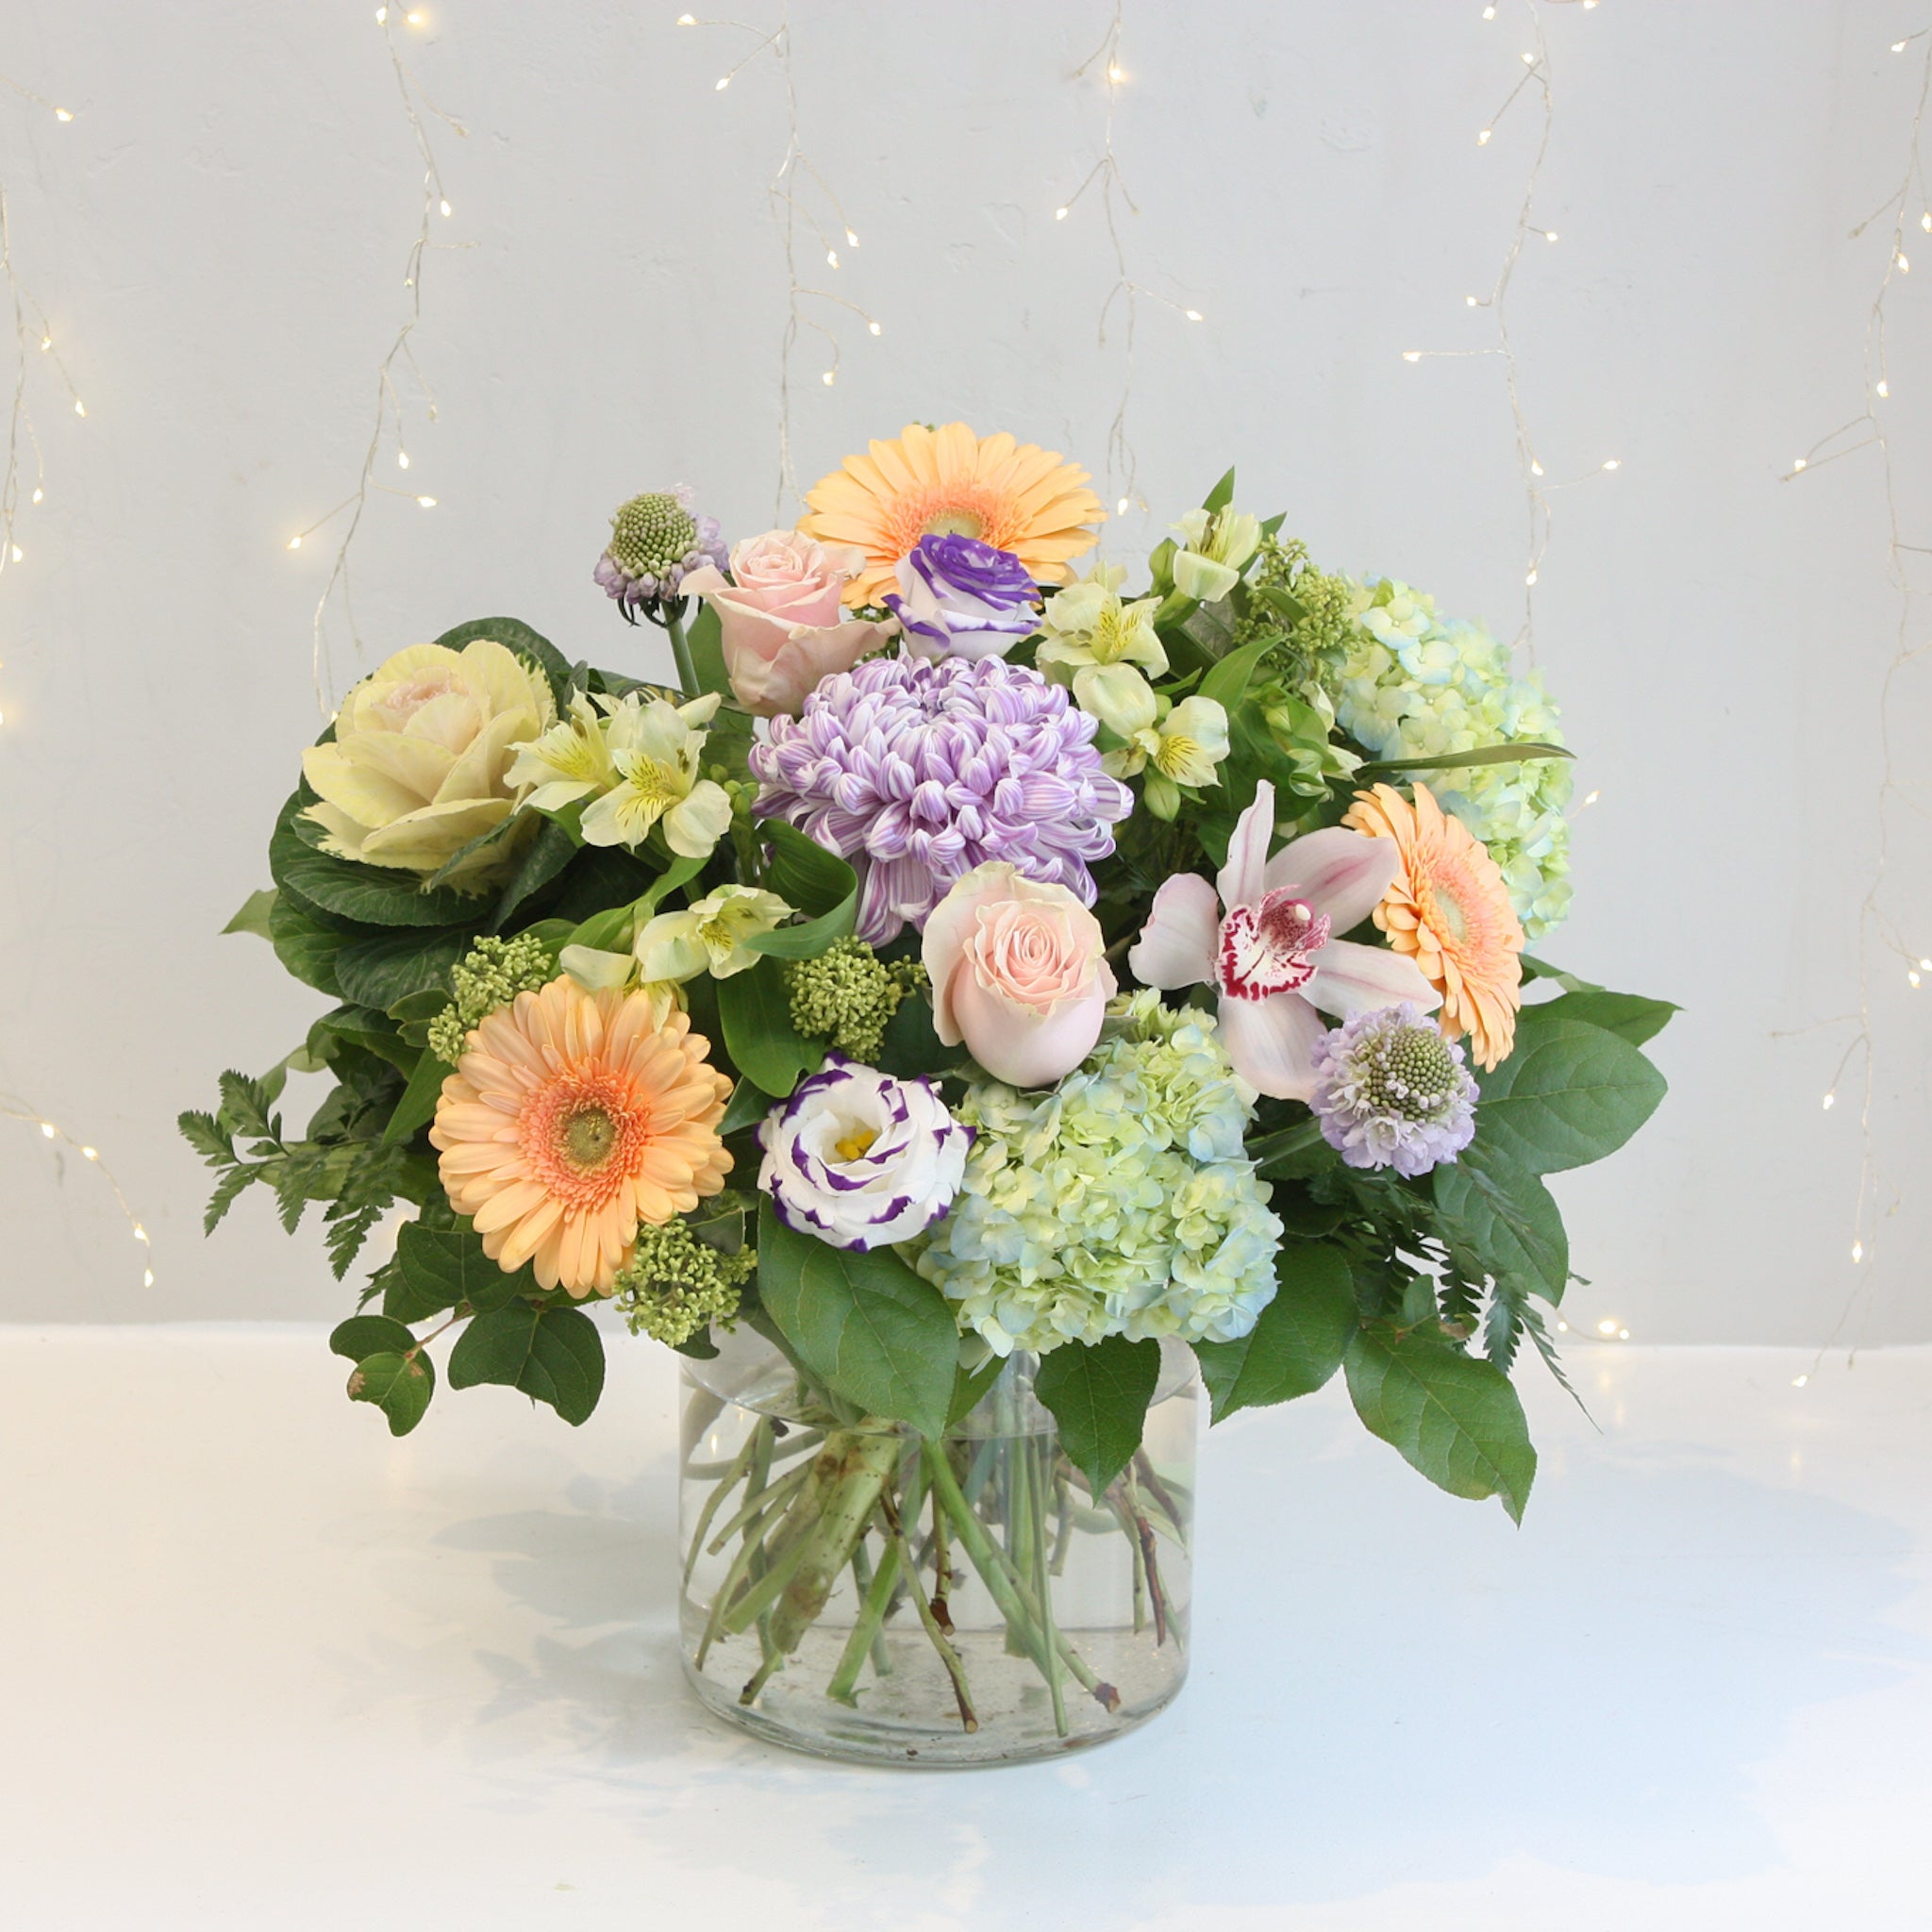 Grand Collection Pastels I – Oleander Floral Design